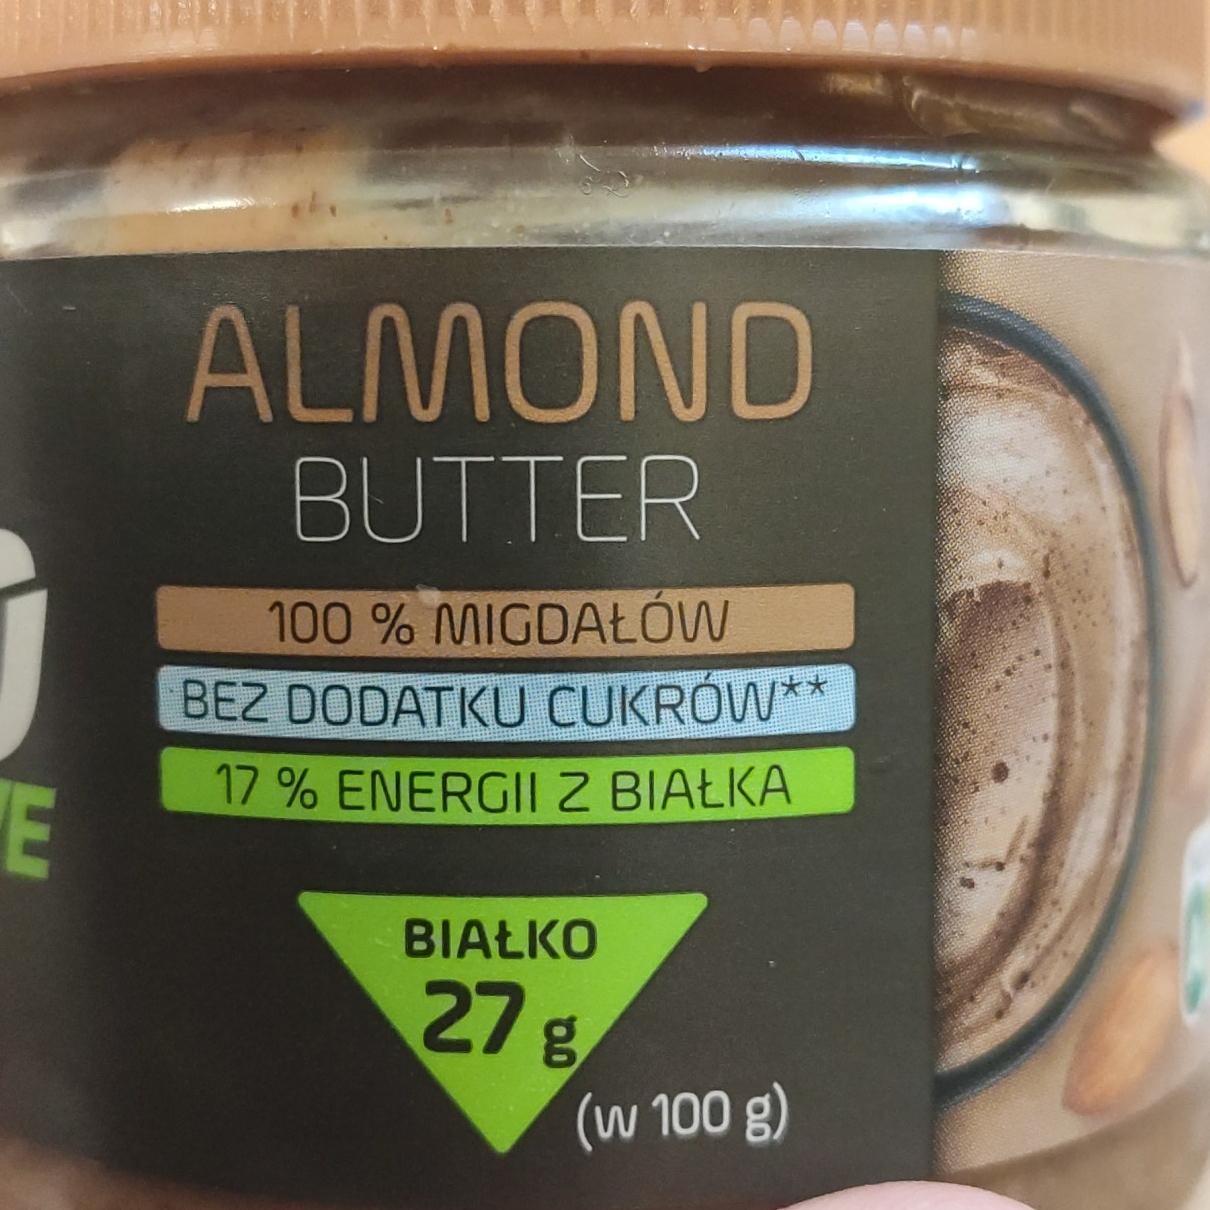 Фото - Паста миндальная без сахара Almond Butter Go Active